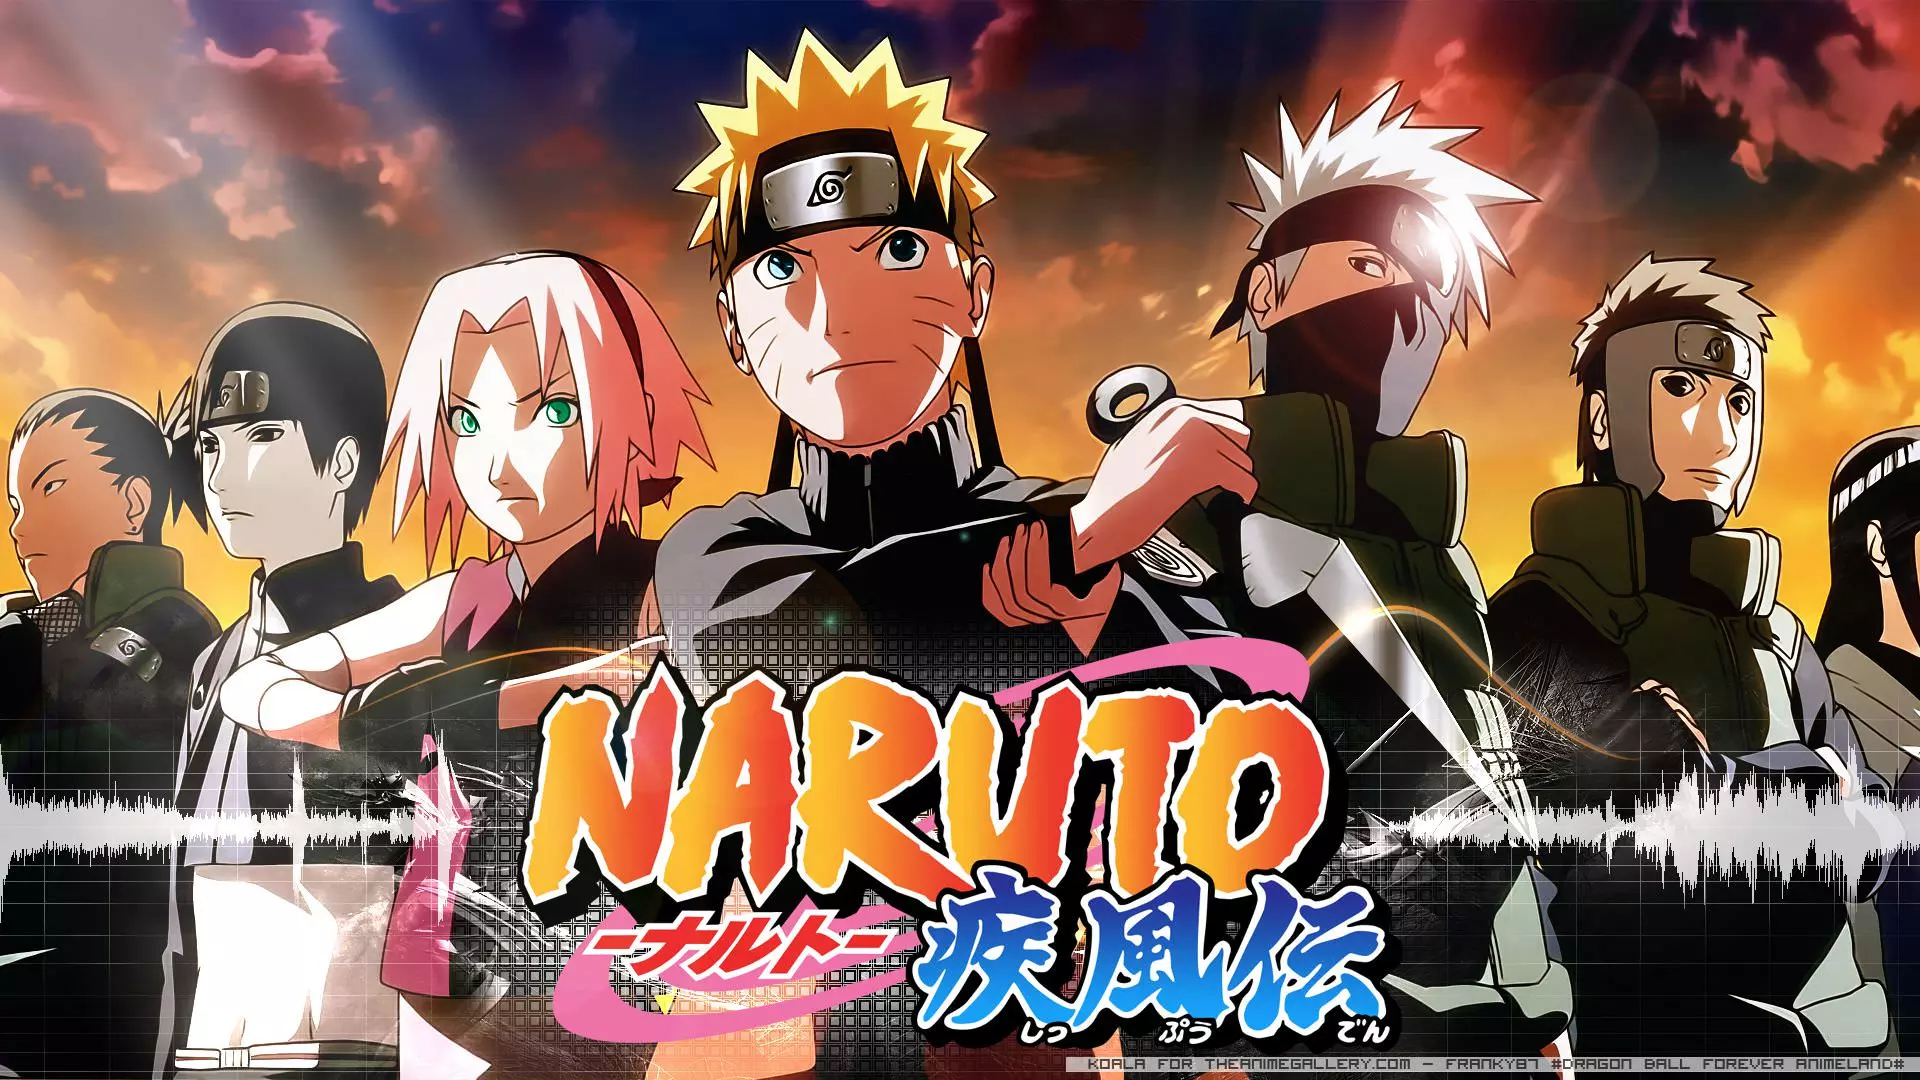 معرفی انیمیشن ” ناروتو | Naruto “